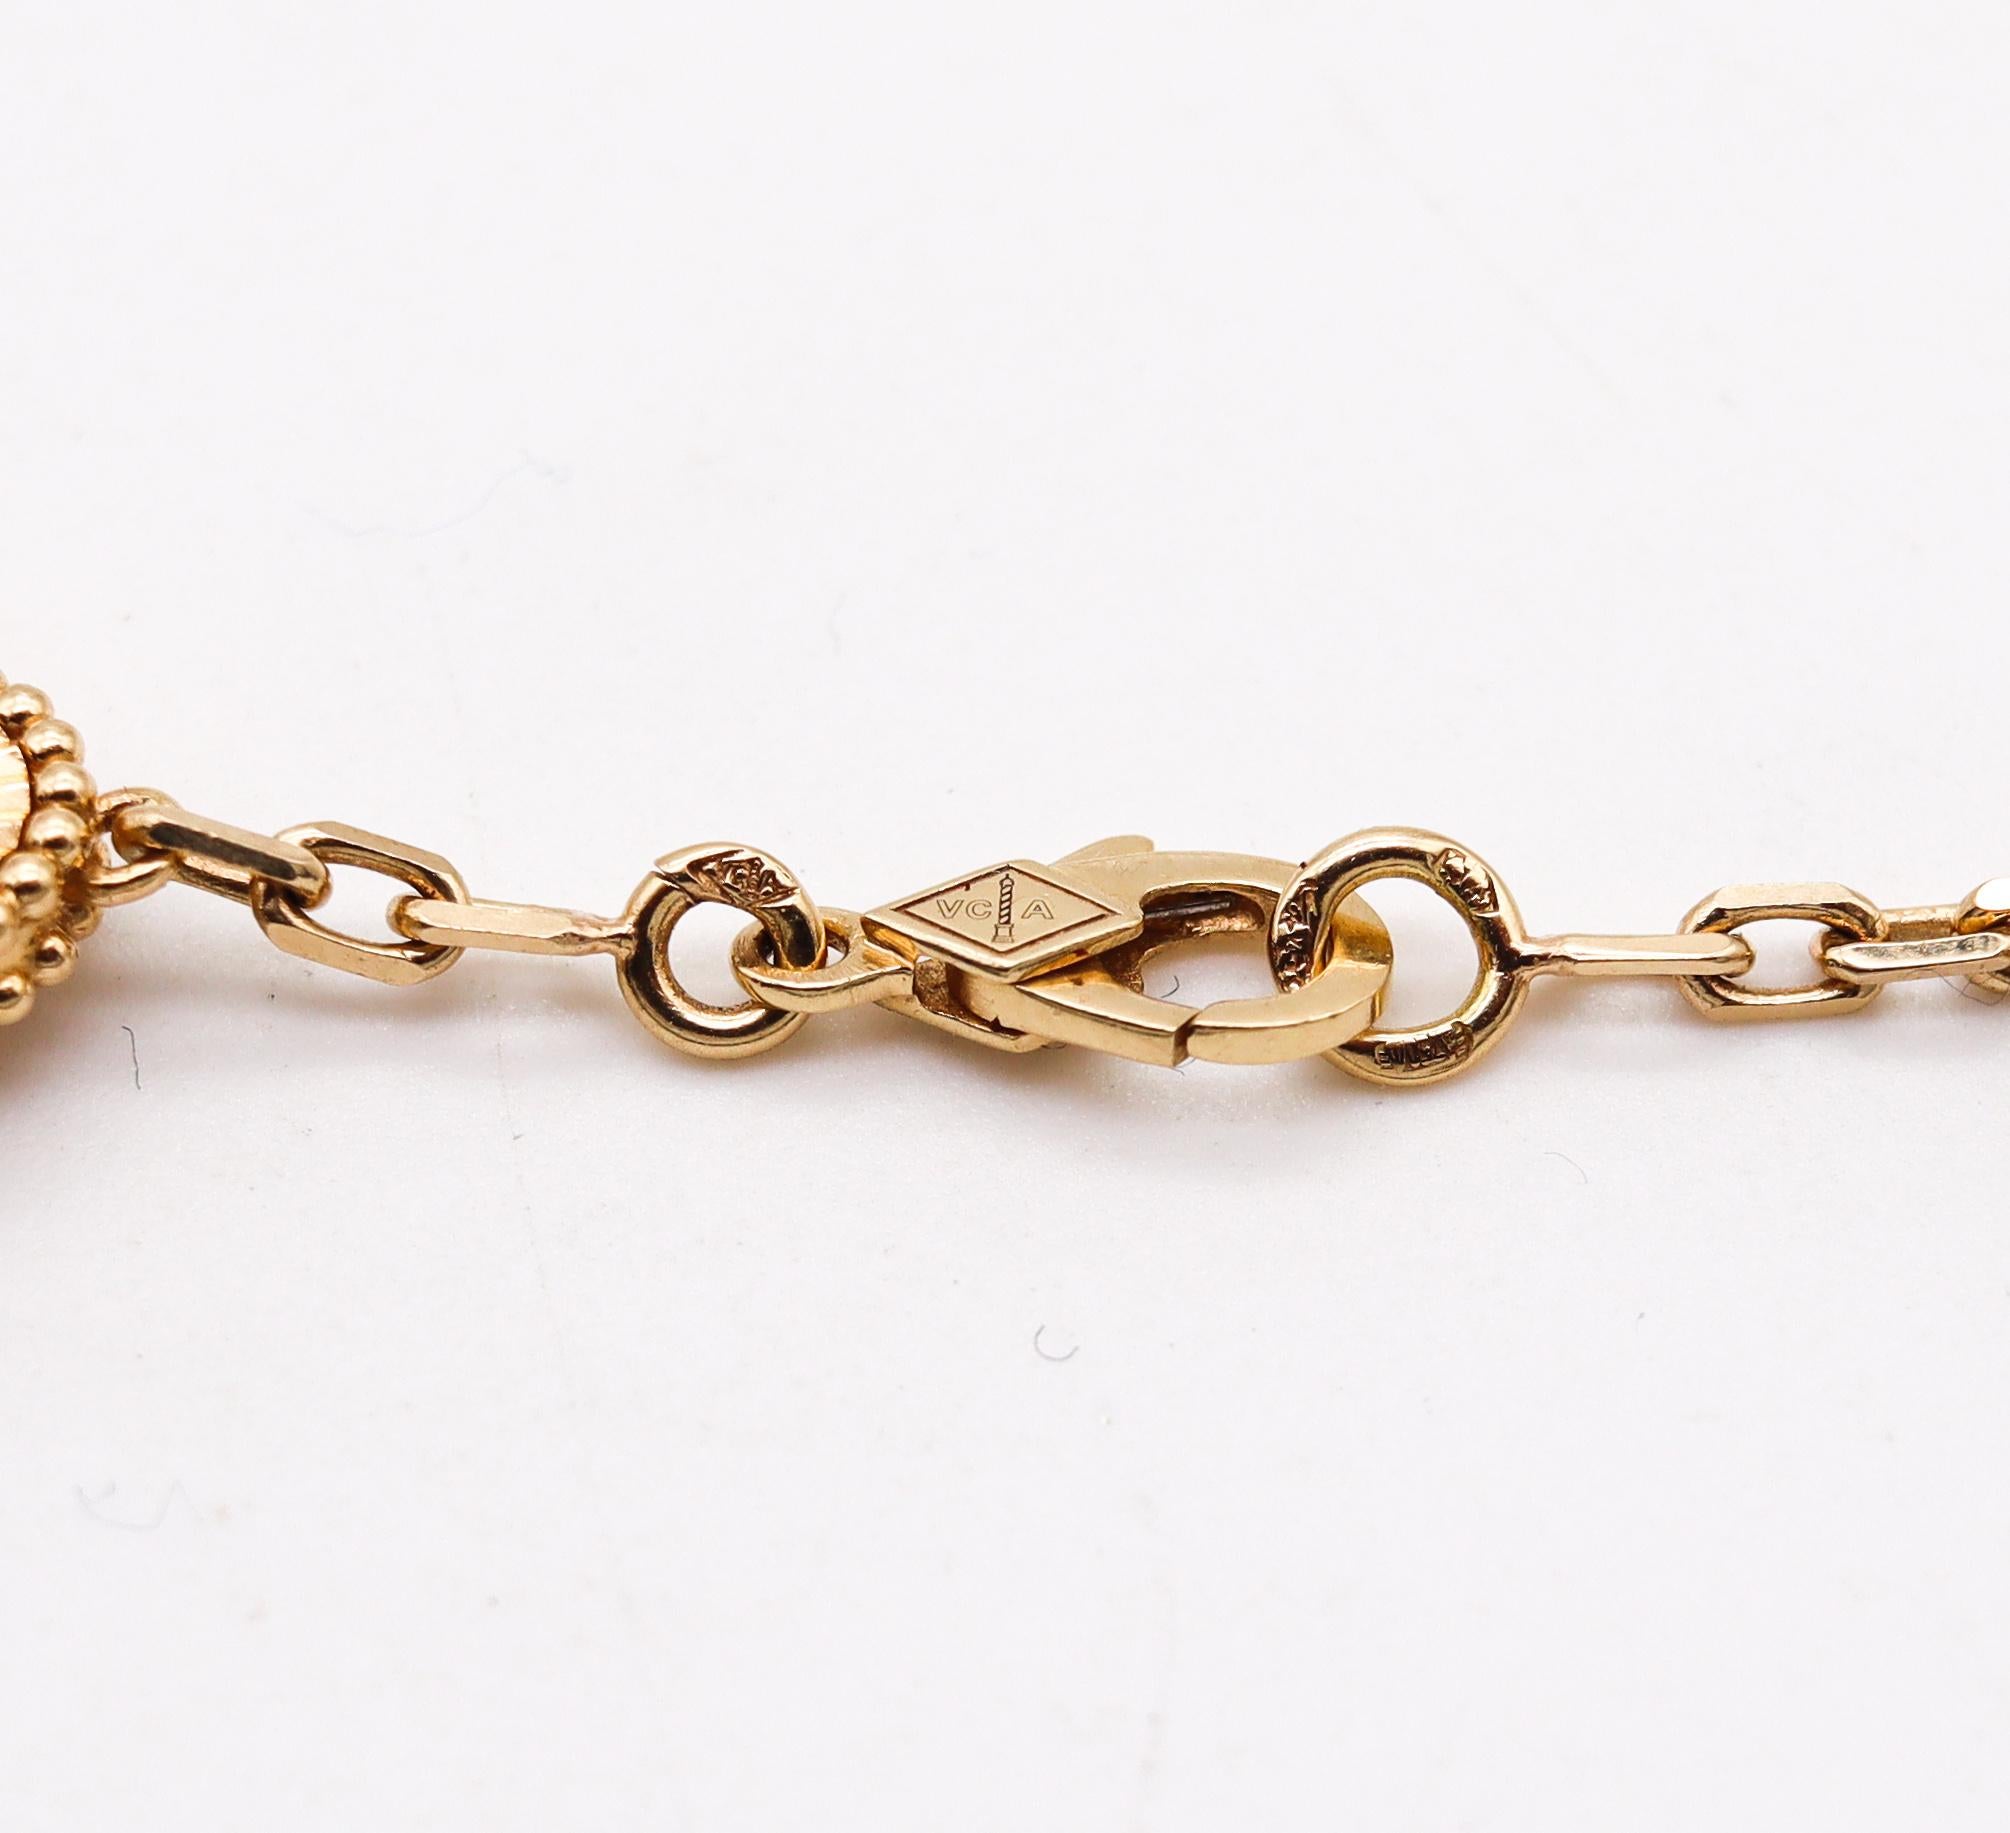 Modernist Van Cleef & Arpels Vintage Alhambra Guilloche 10 Motifs Necklace in 18Kt Gold